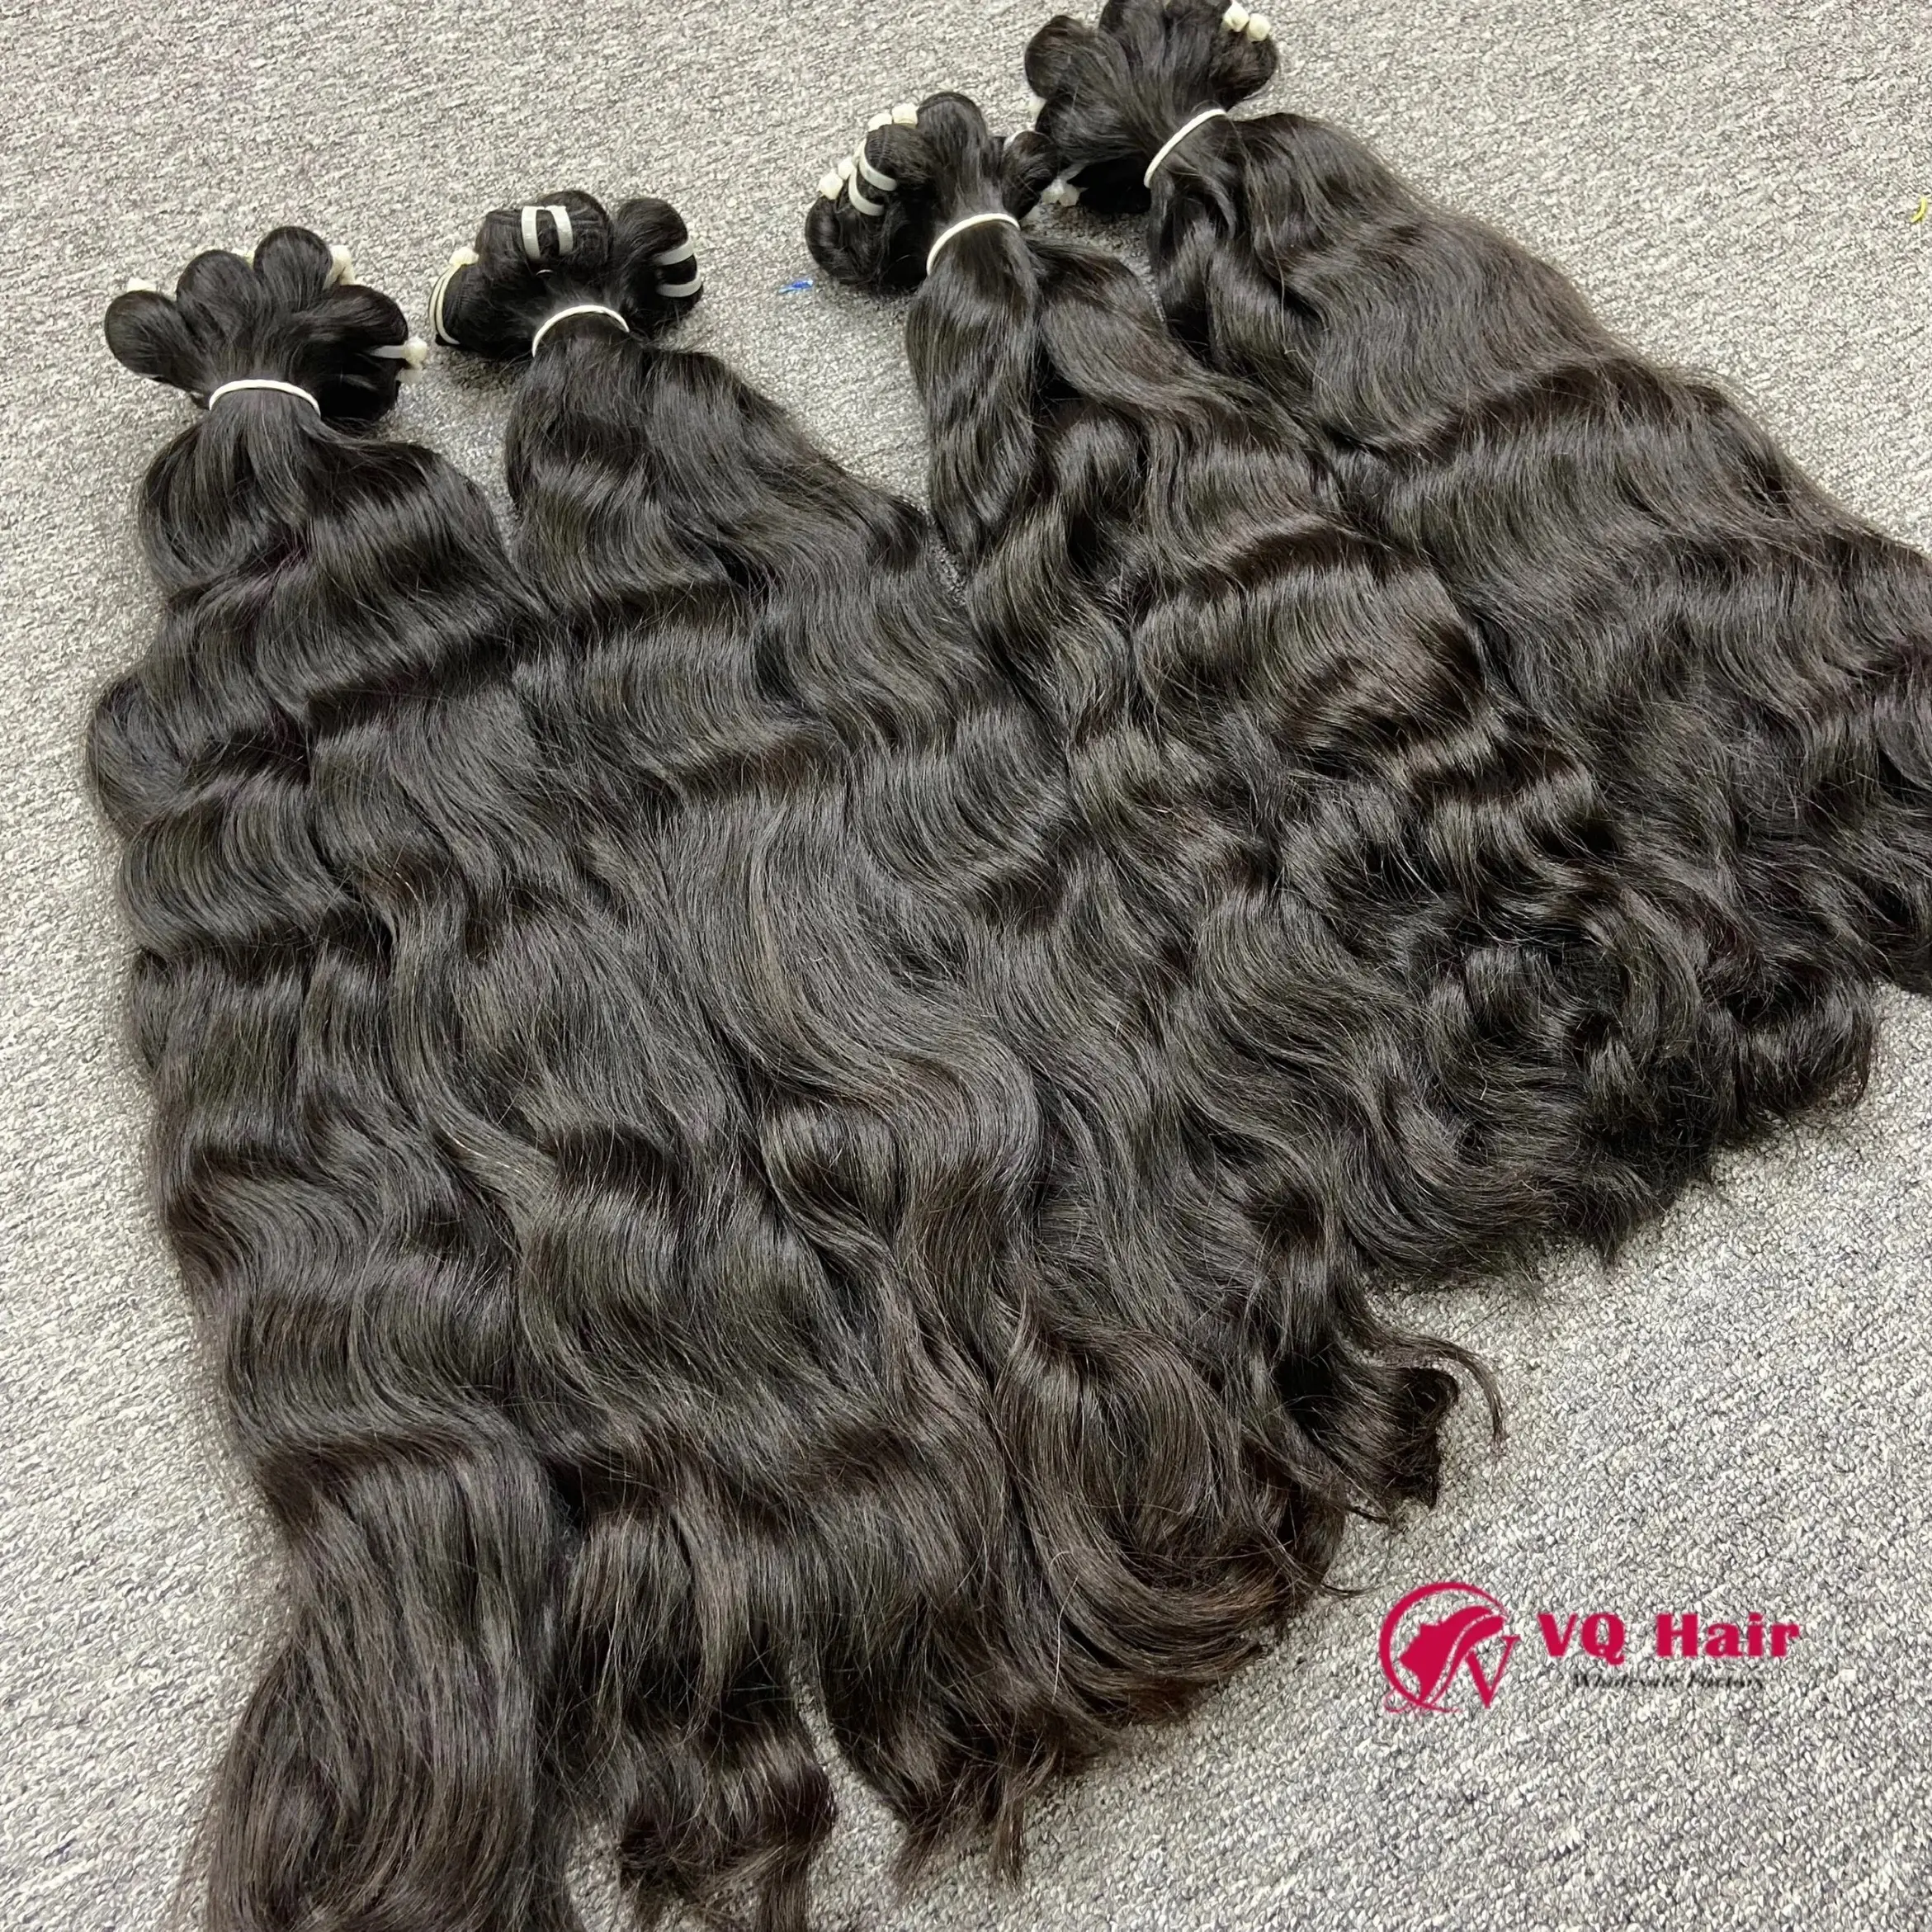 Melhor cabelo humano por atacado 100% cabelo cru vietnamita fornecedores de cabelo cru ondulado natural cambojano